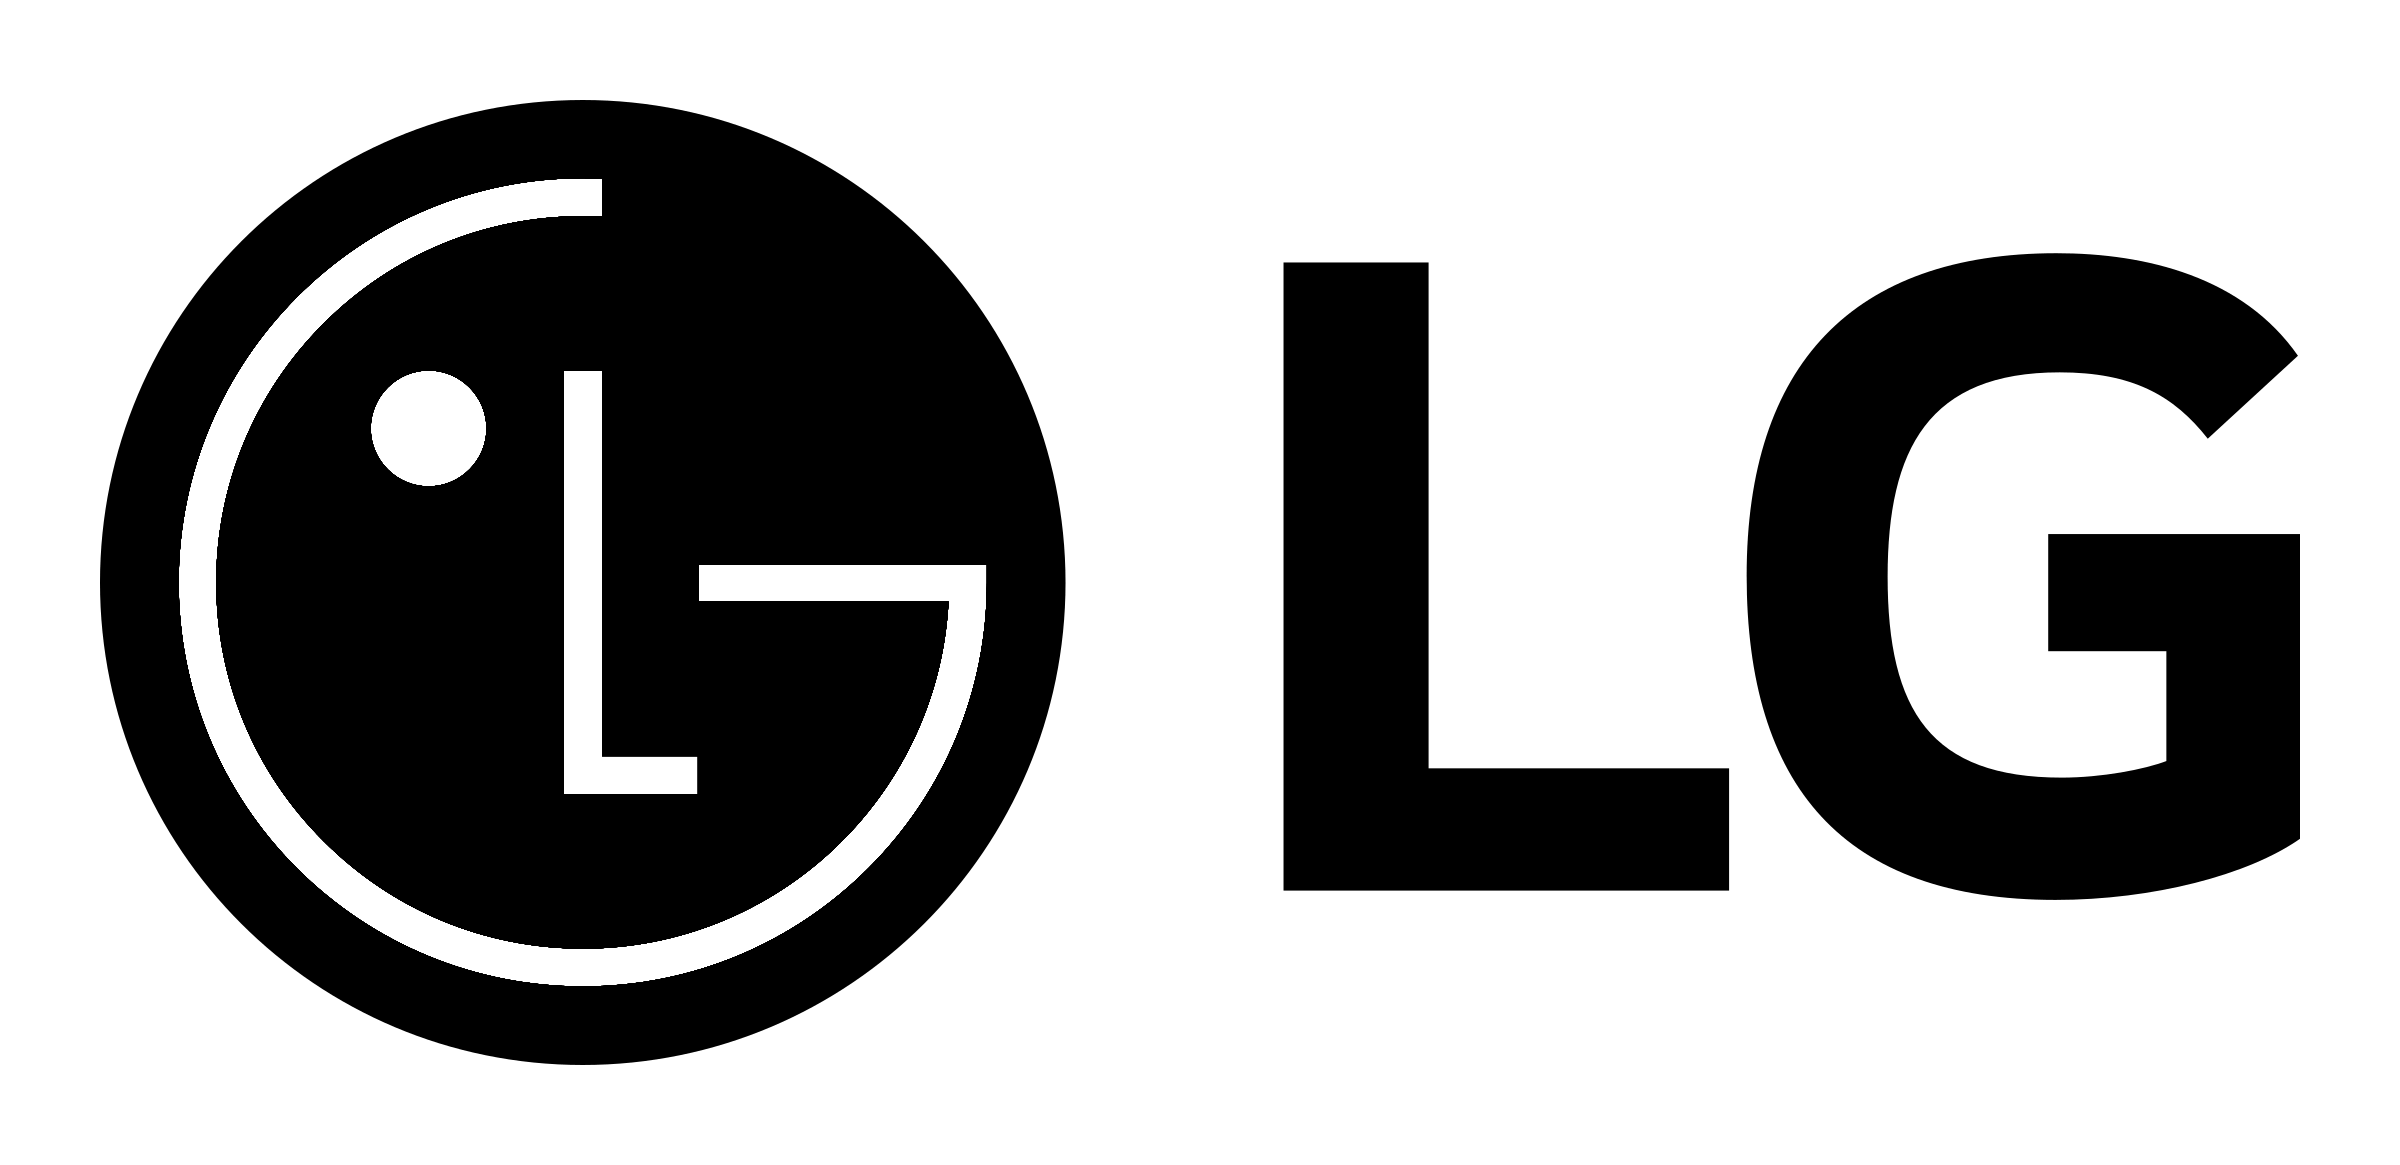 LG Logo - LG Logo PNG Transparent & SVG Vector